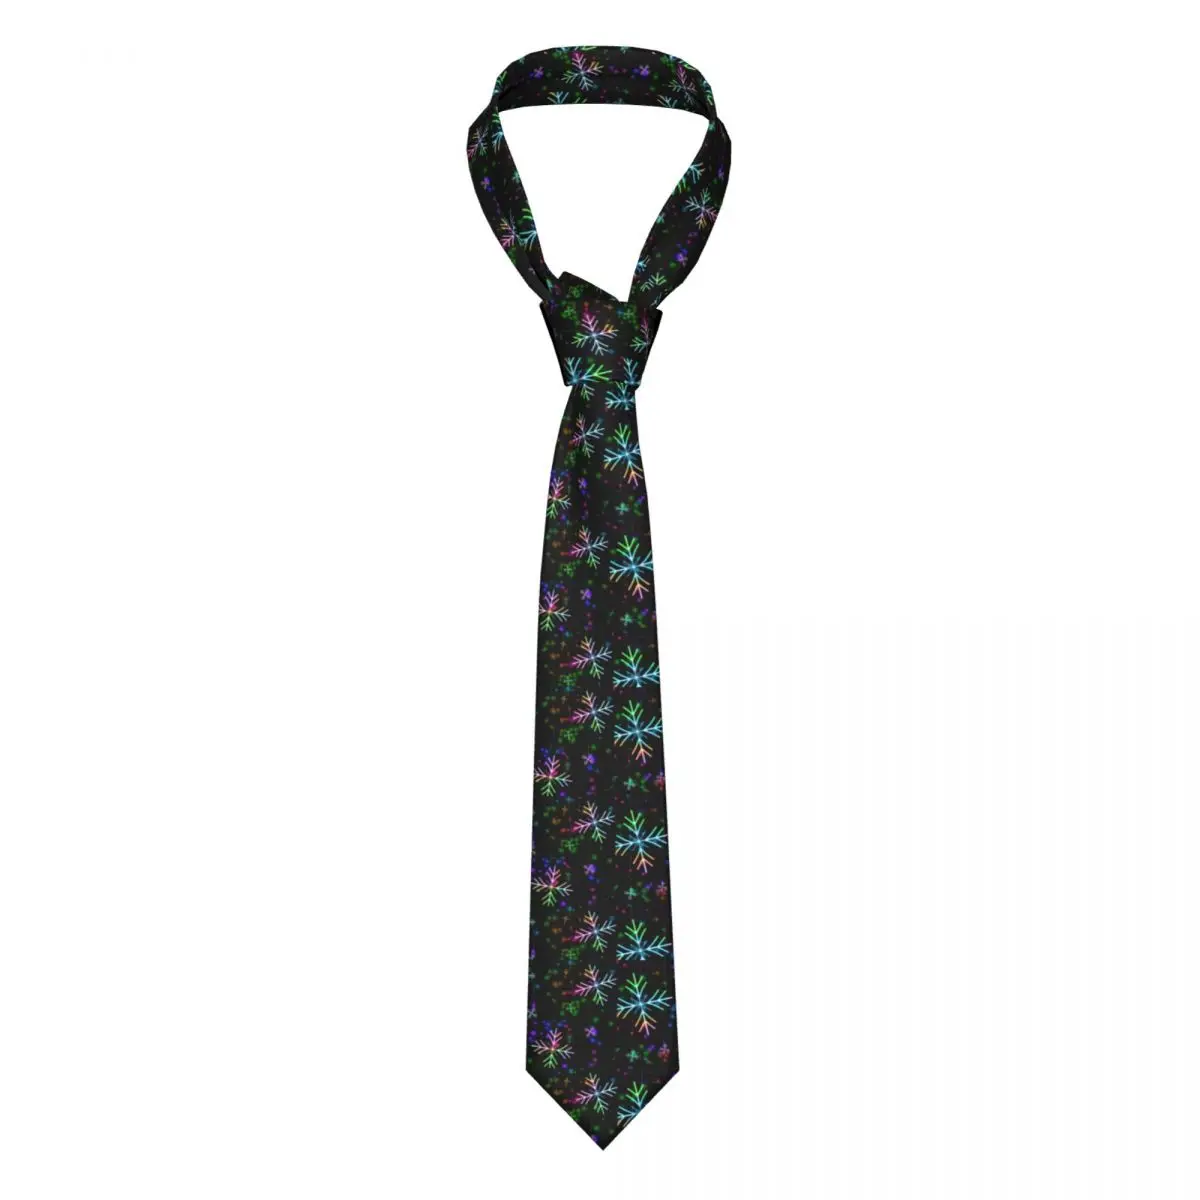 

Галстук с бусинами в виде снега красочный праздничный узор деловой галстук 8 см для мужчин Подарочный галстук с принтом рубашки